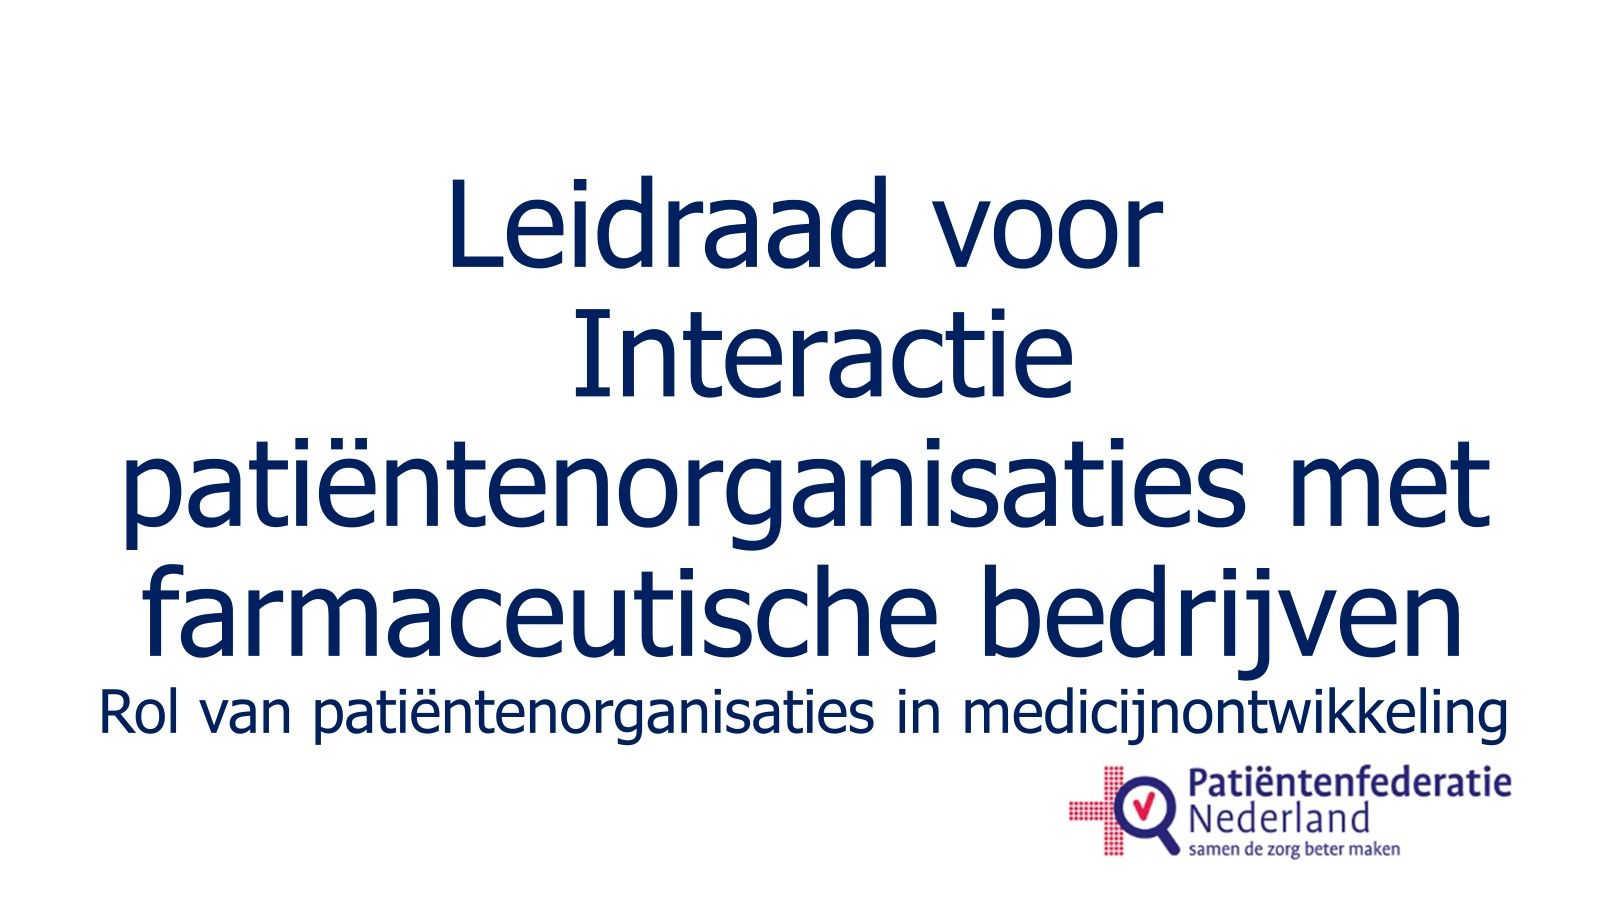 Leidraad voor interactie van patiëntenorganisaties met farmaceutische bedrijven - Rol van patiëntenorganisaties in medicijnontwikkeling